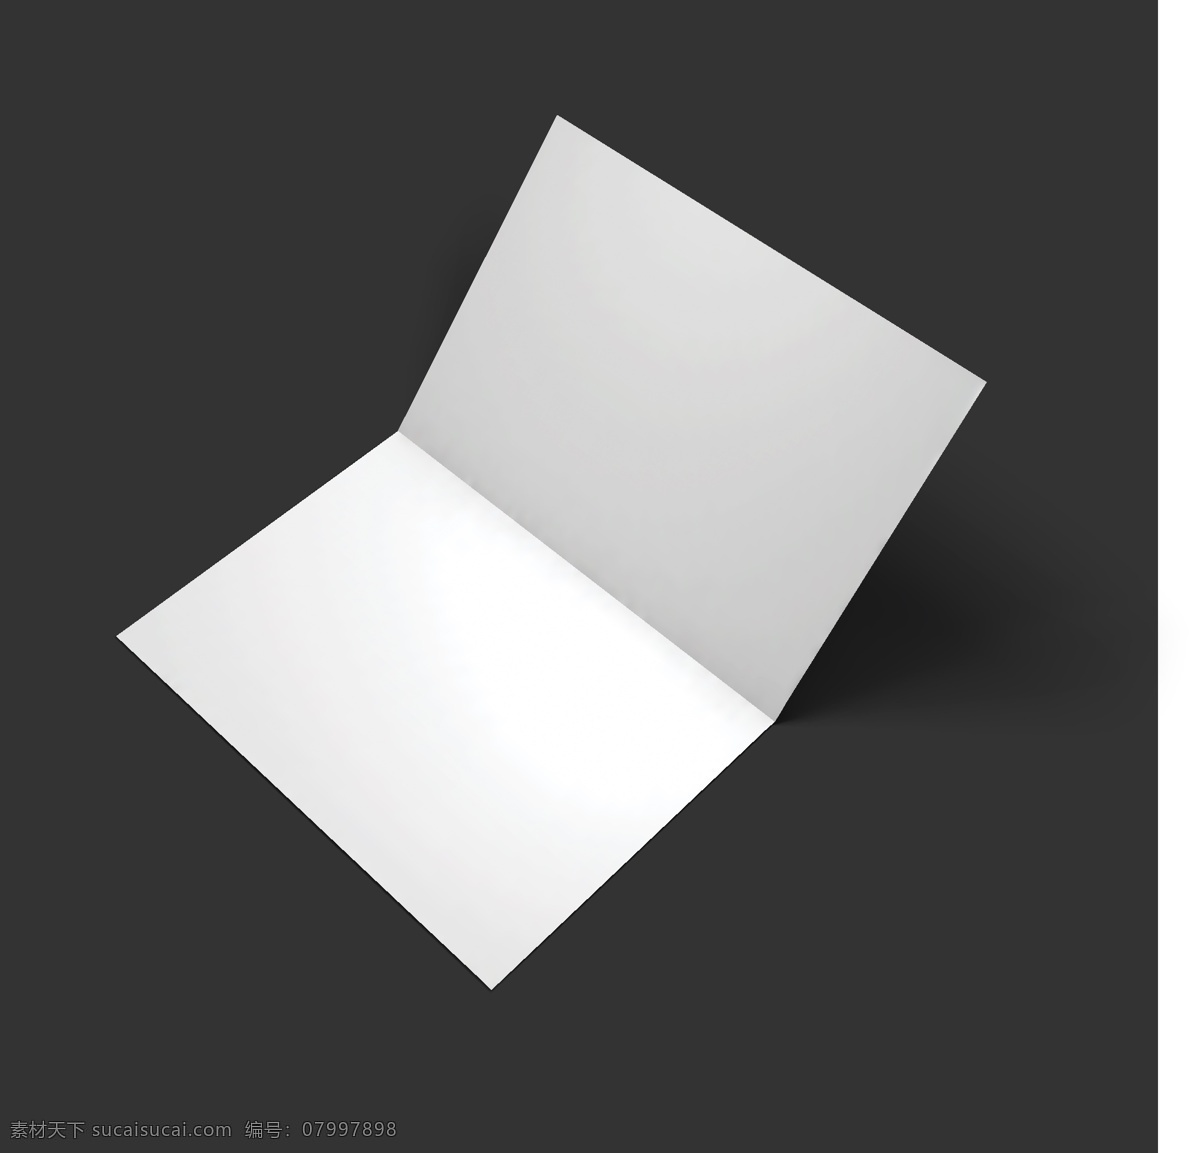 空白 广告 效果图 册子 空白背景 名片卡片 手册 宣传折页设计 折页背景 展示 三 折页 物料 空白折页模板 矢量图